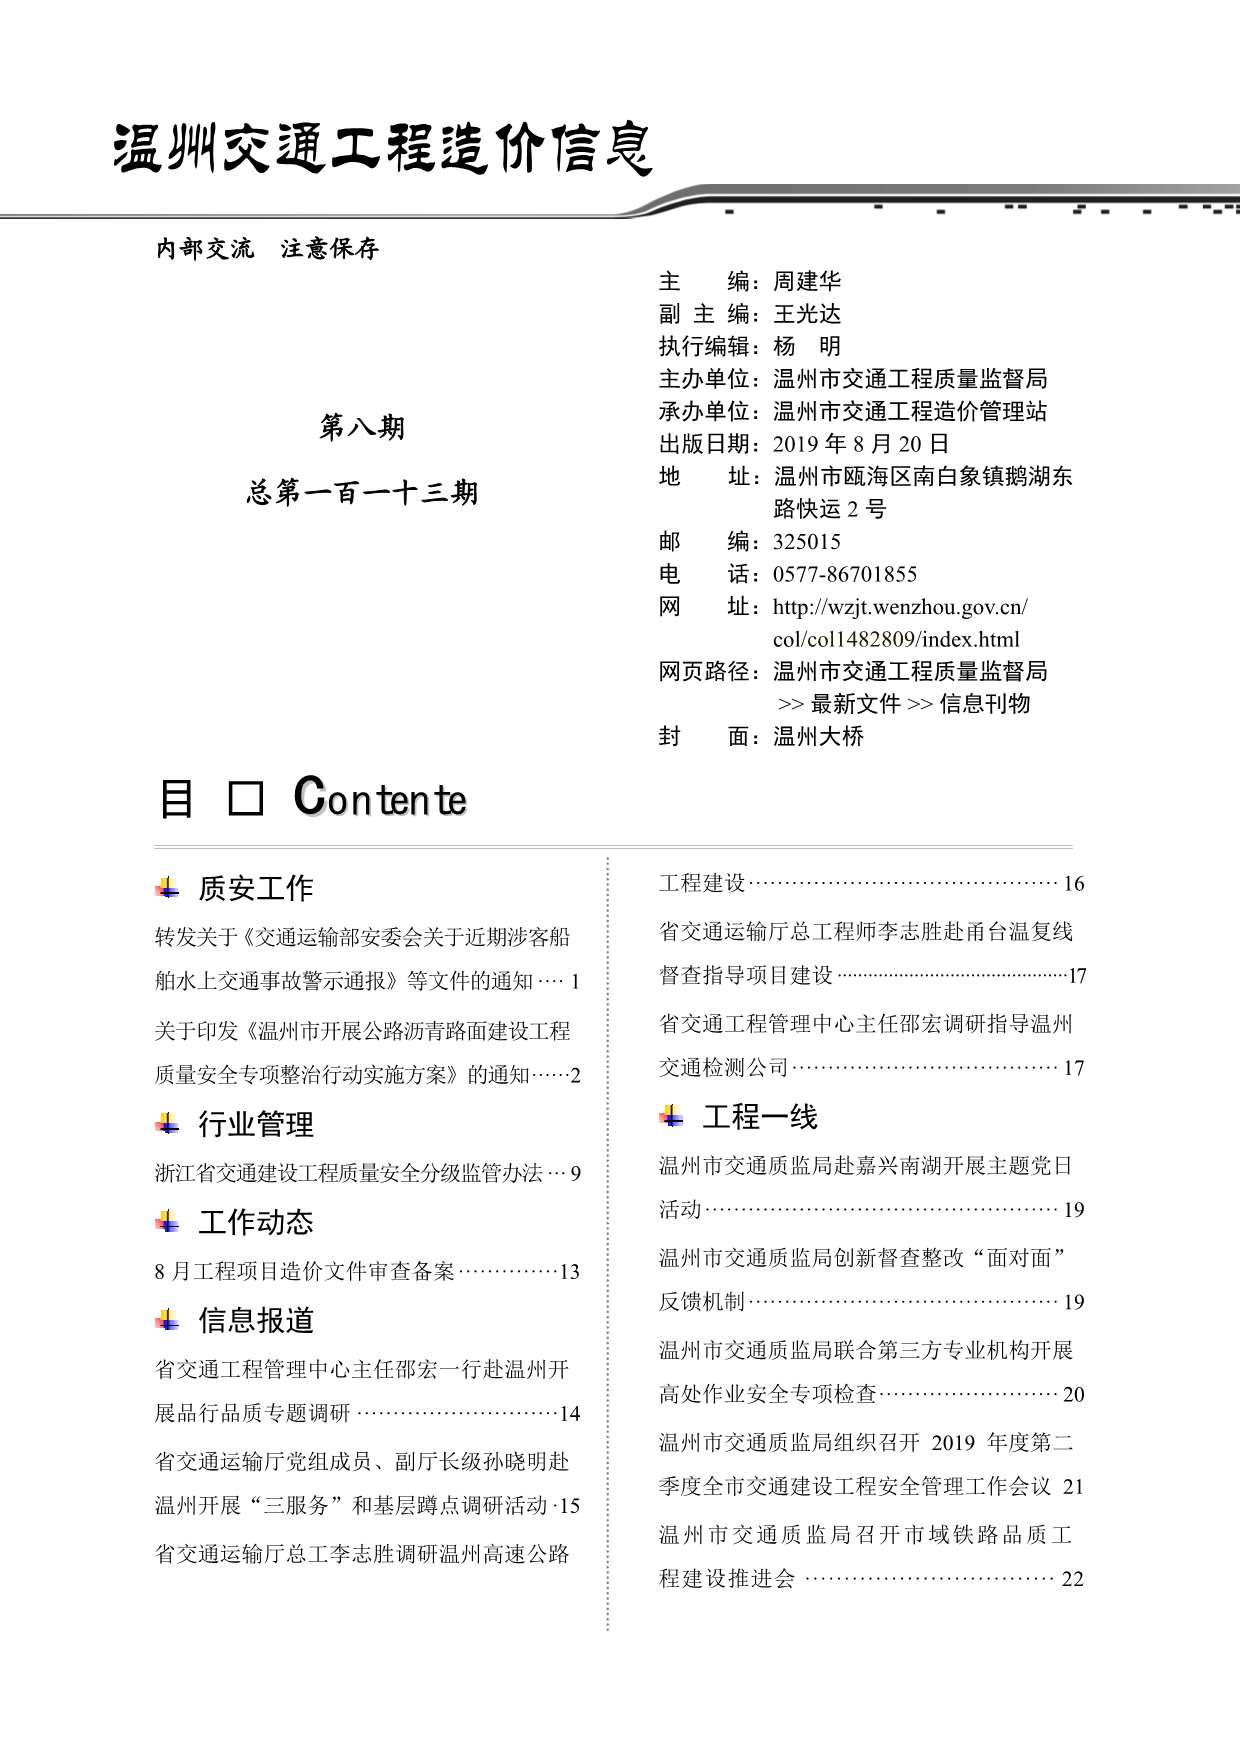 2019年8期温州交通信息价pdf扫描件